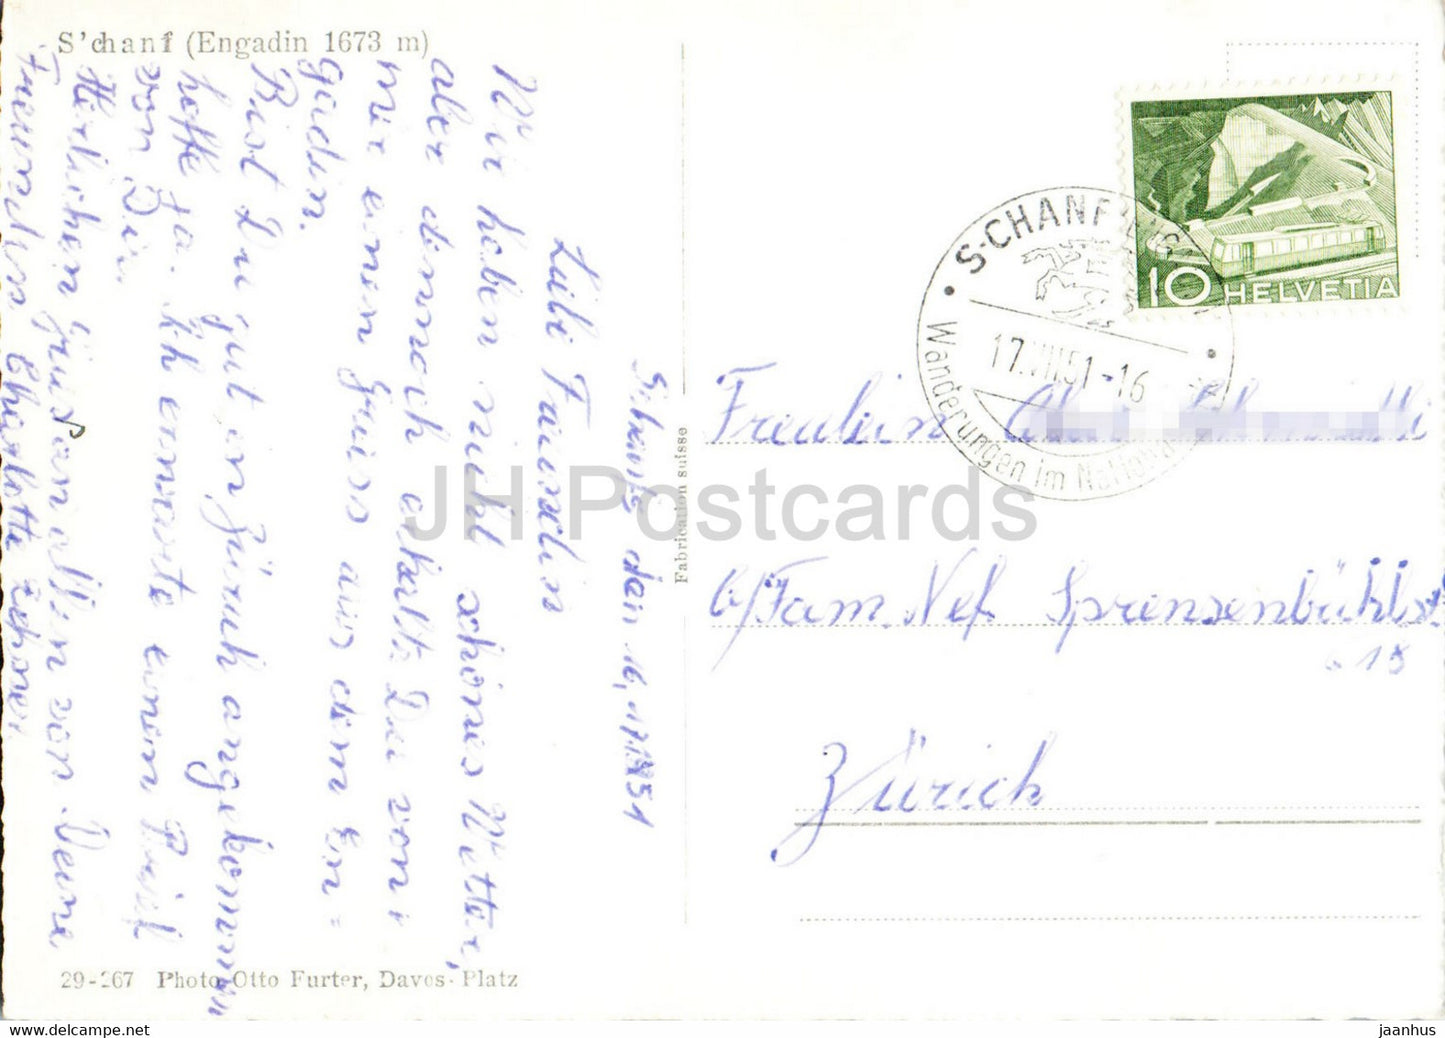 S'chanf - Engadin 1673 m - alte Postkarte - 1951 - Schweiz - gebraucht